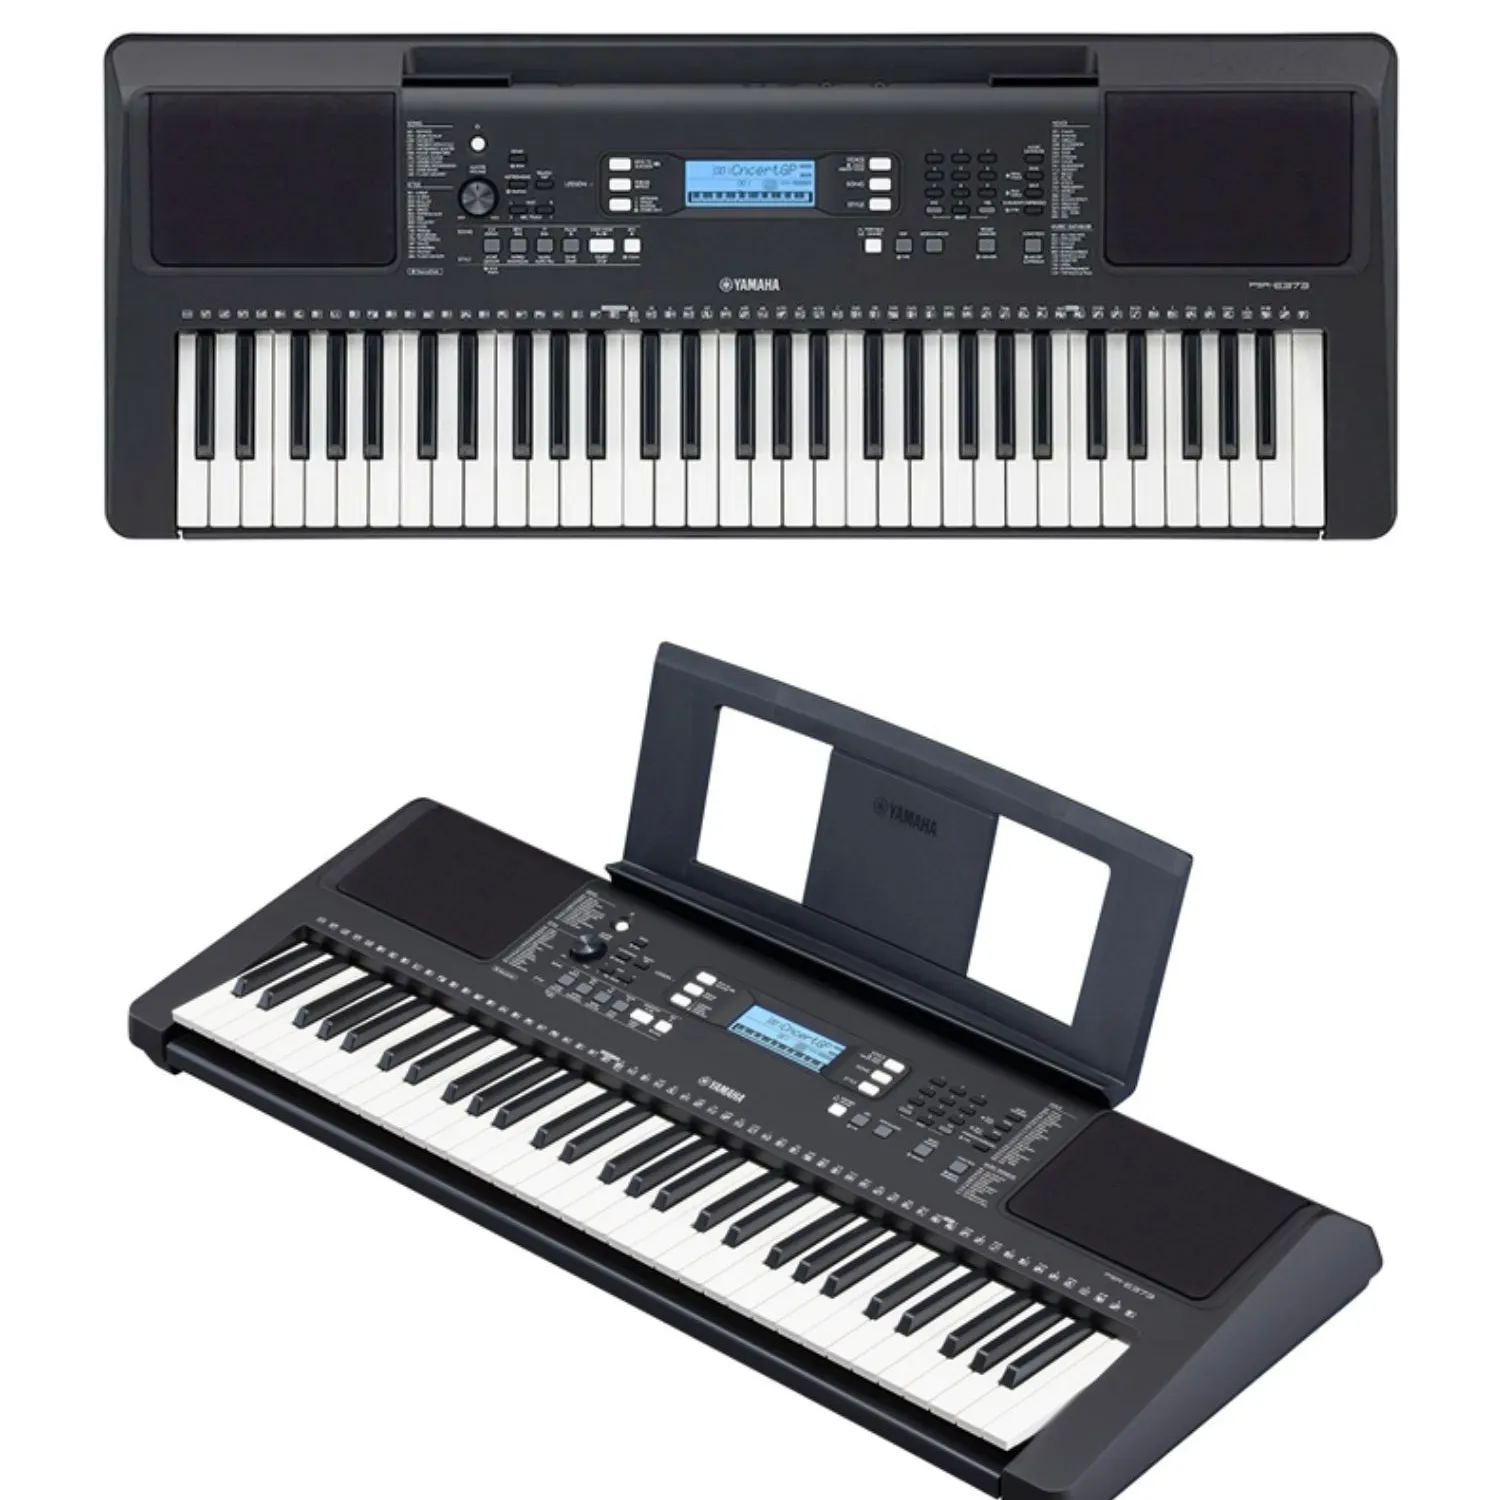 Новая Оригинальная клавиатура yamahes, 61 клавиша, английская панель, черная Psr-E373 клавиатура, набор